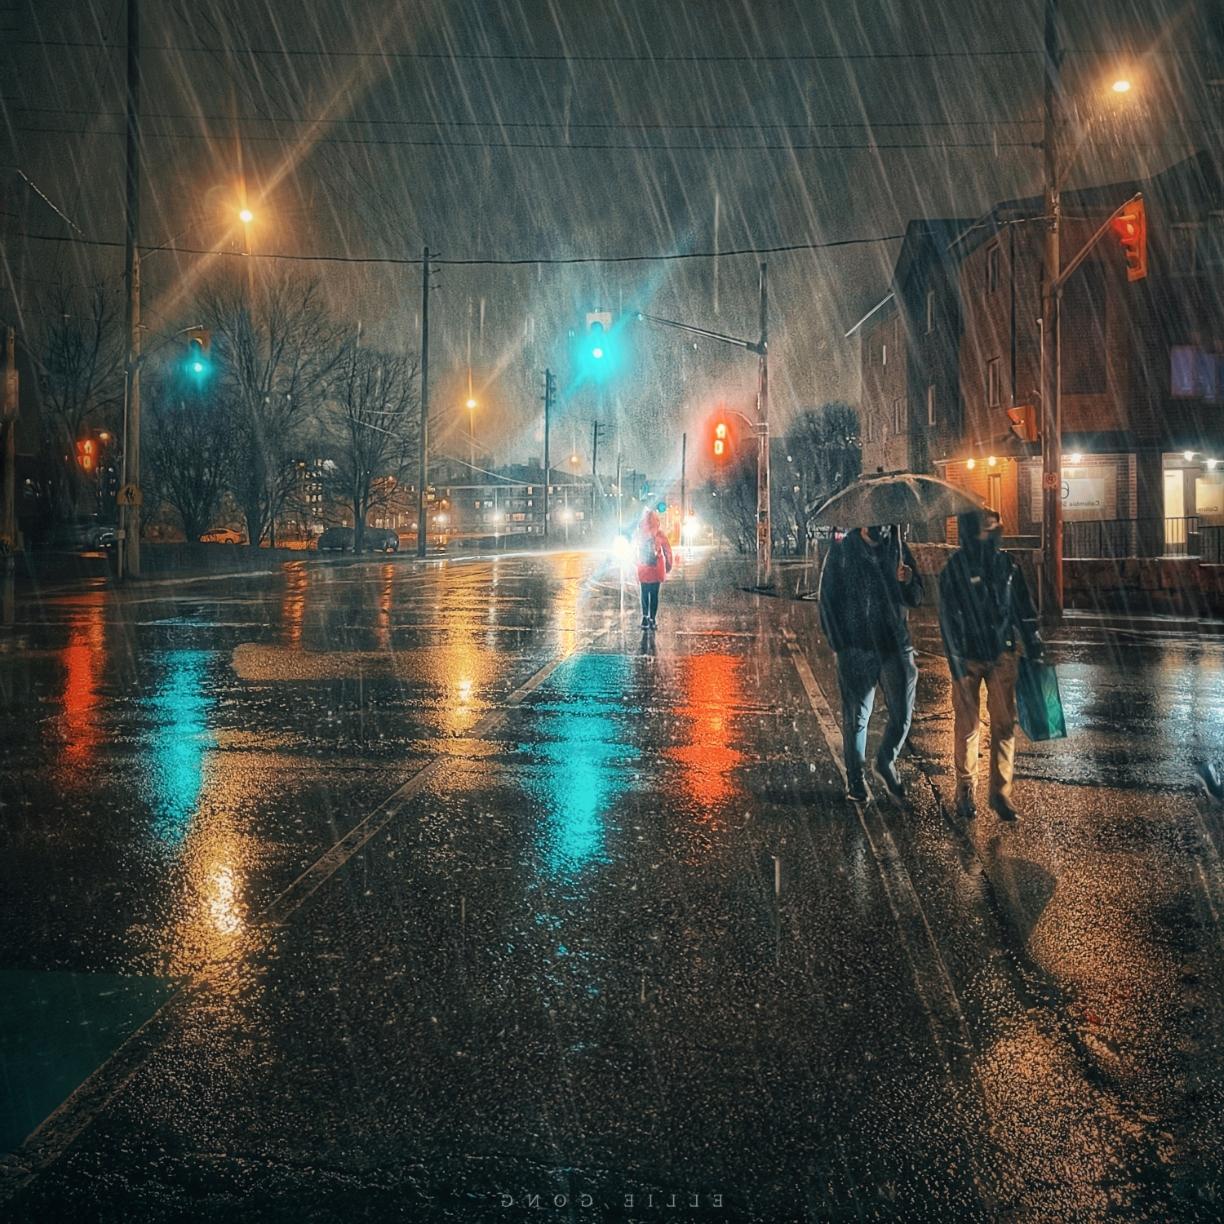 Rainy Night Images